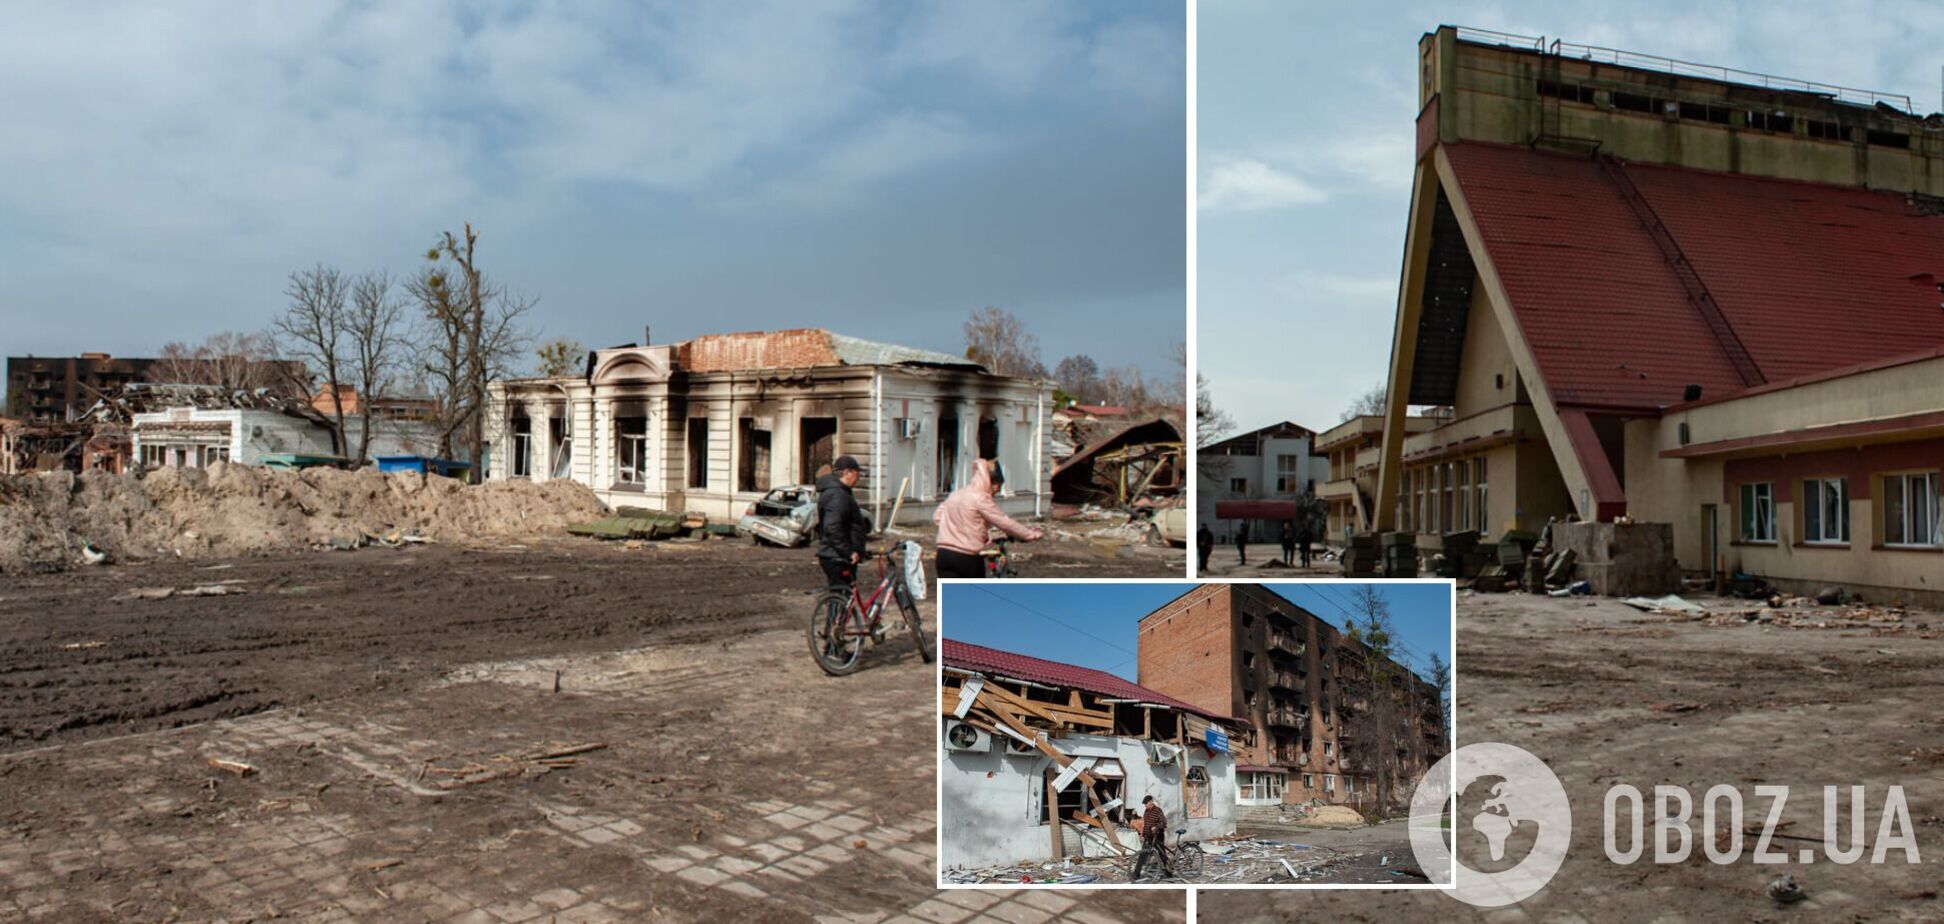 Архитекторы уже начали работы по восстановлению разрушенного россиянами Тростянца